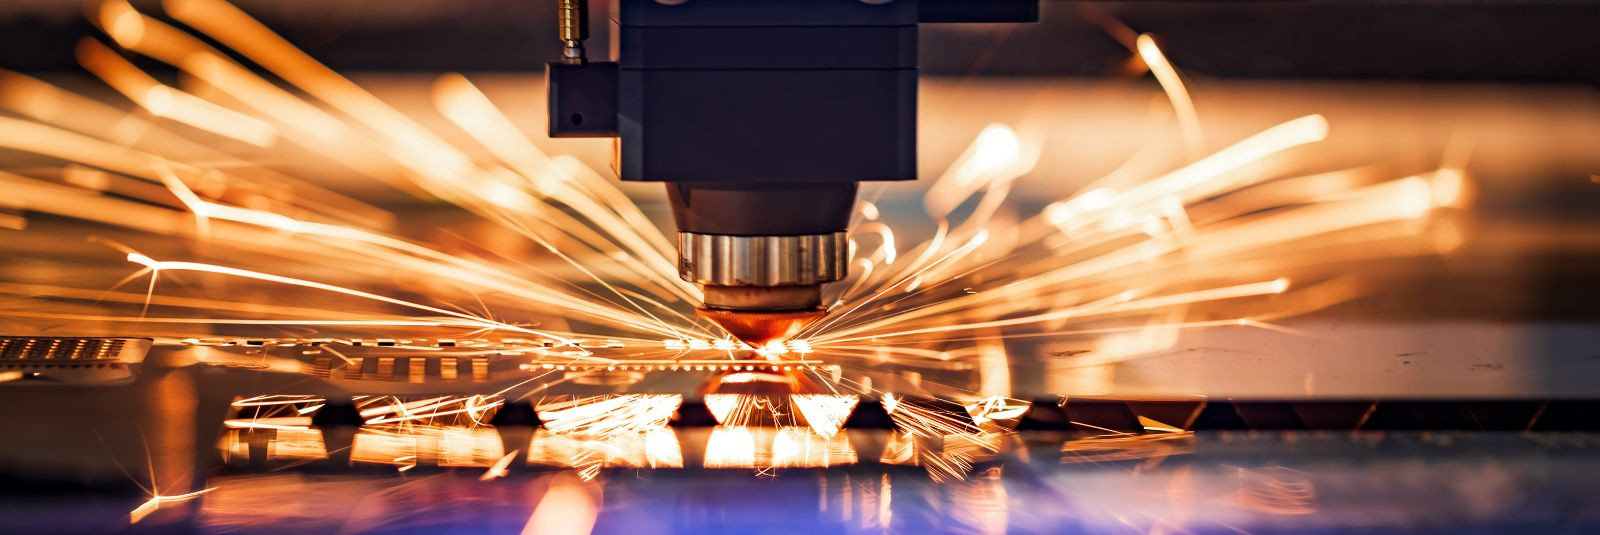 Metallitöötlemisel on plasma- ja laserlõikus kaks tipptehnoloogilist ...